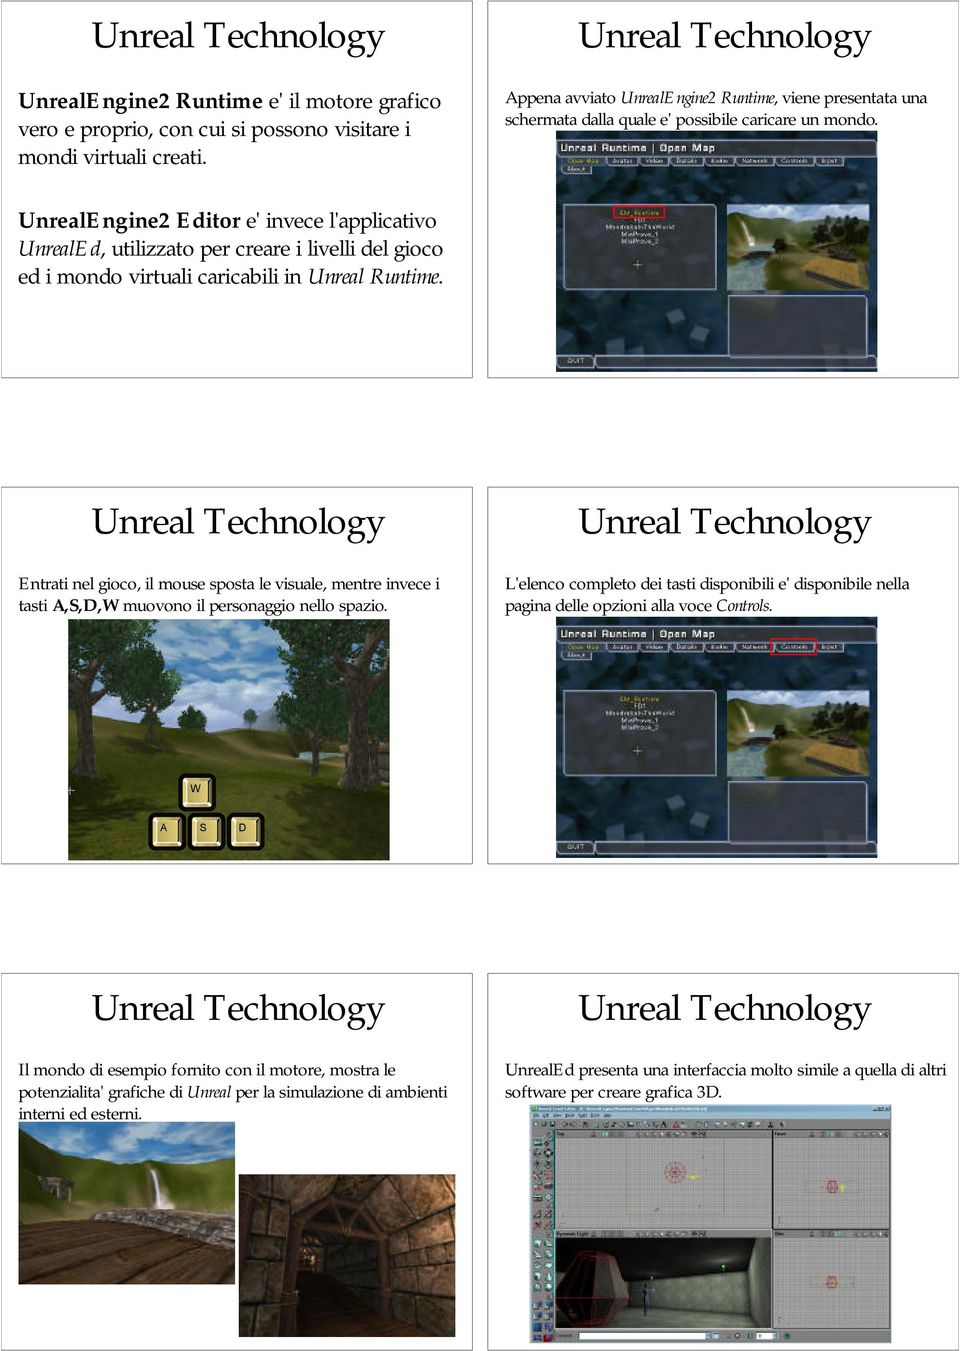 UnrealEngine2 Editor e' invece l'applicativo UnrealEd, utilizzato per creare i livelli del gioco ed i mondo virtuali caricabili in Unreal Runtime.